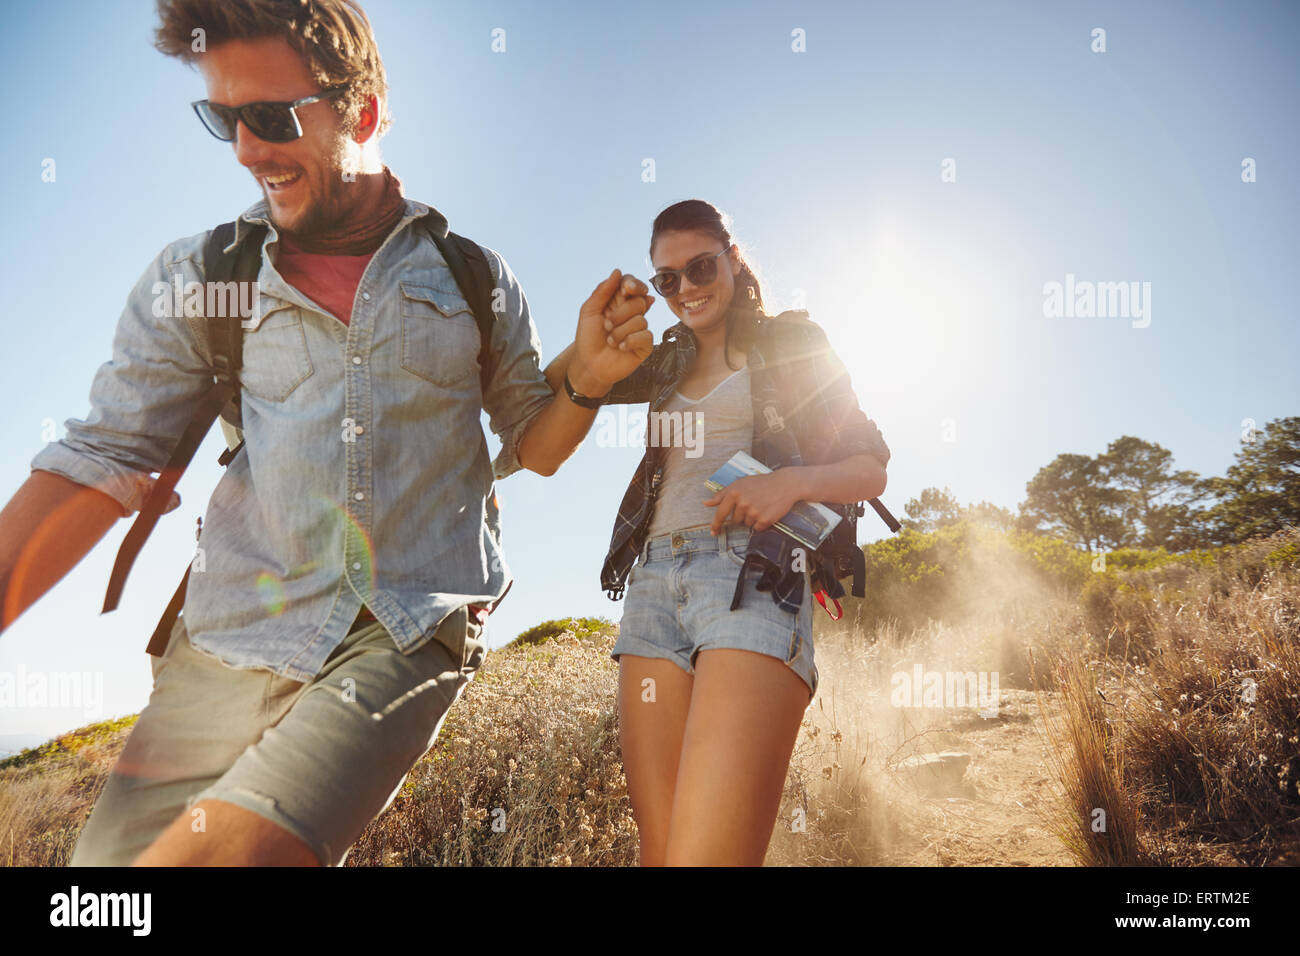 Tourné en plein air de happy young couple sur leur voyage de randonnée, marche sur la piste de montagne en souriant. Caucasian couple havi Banque D'Images